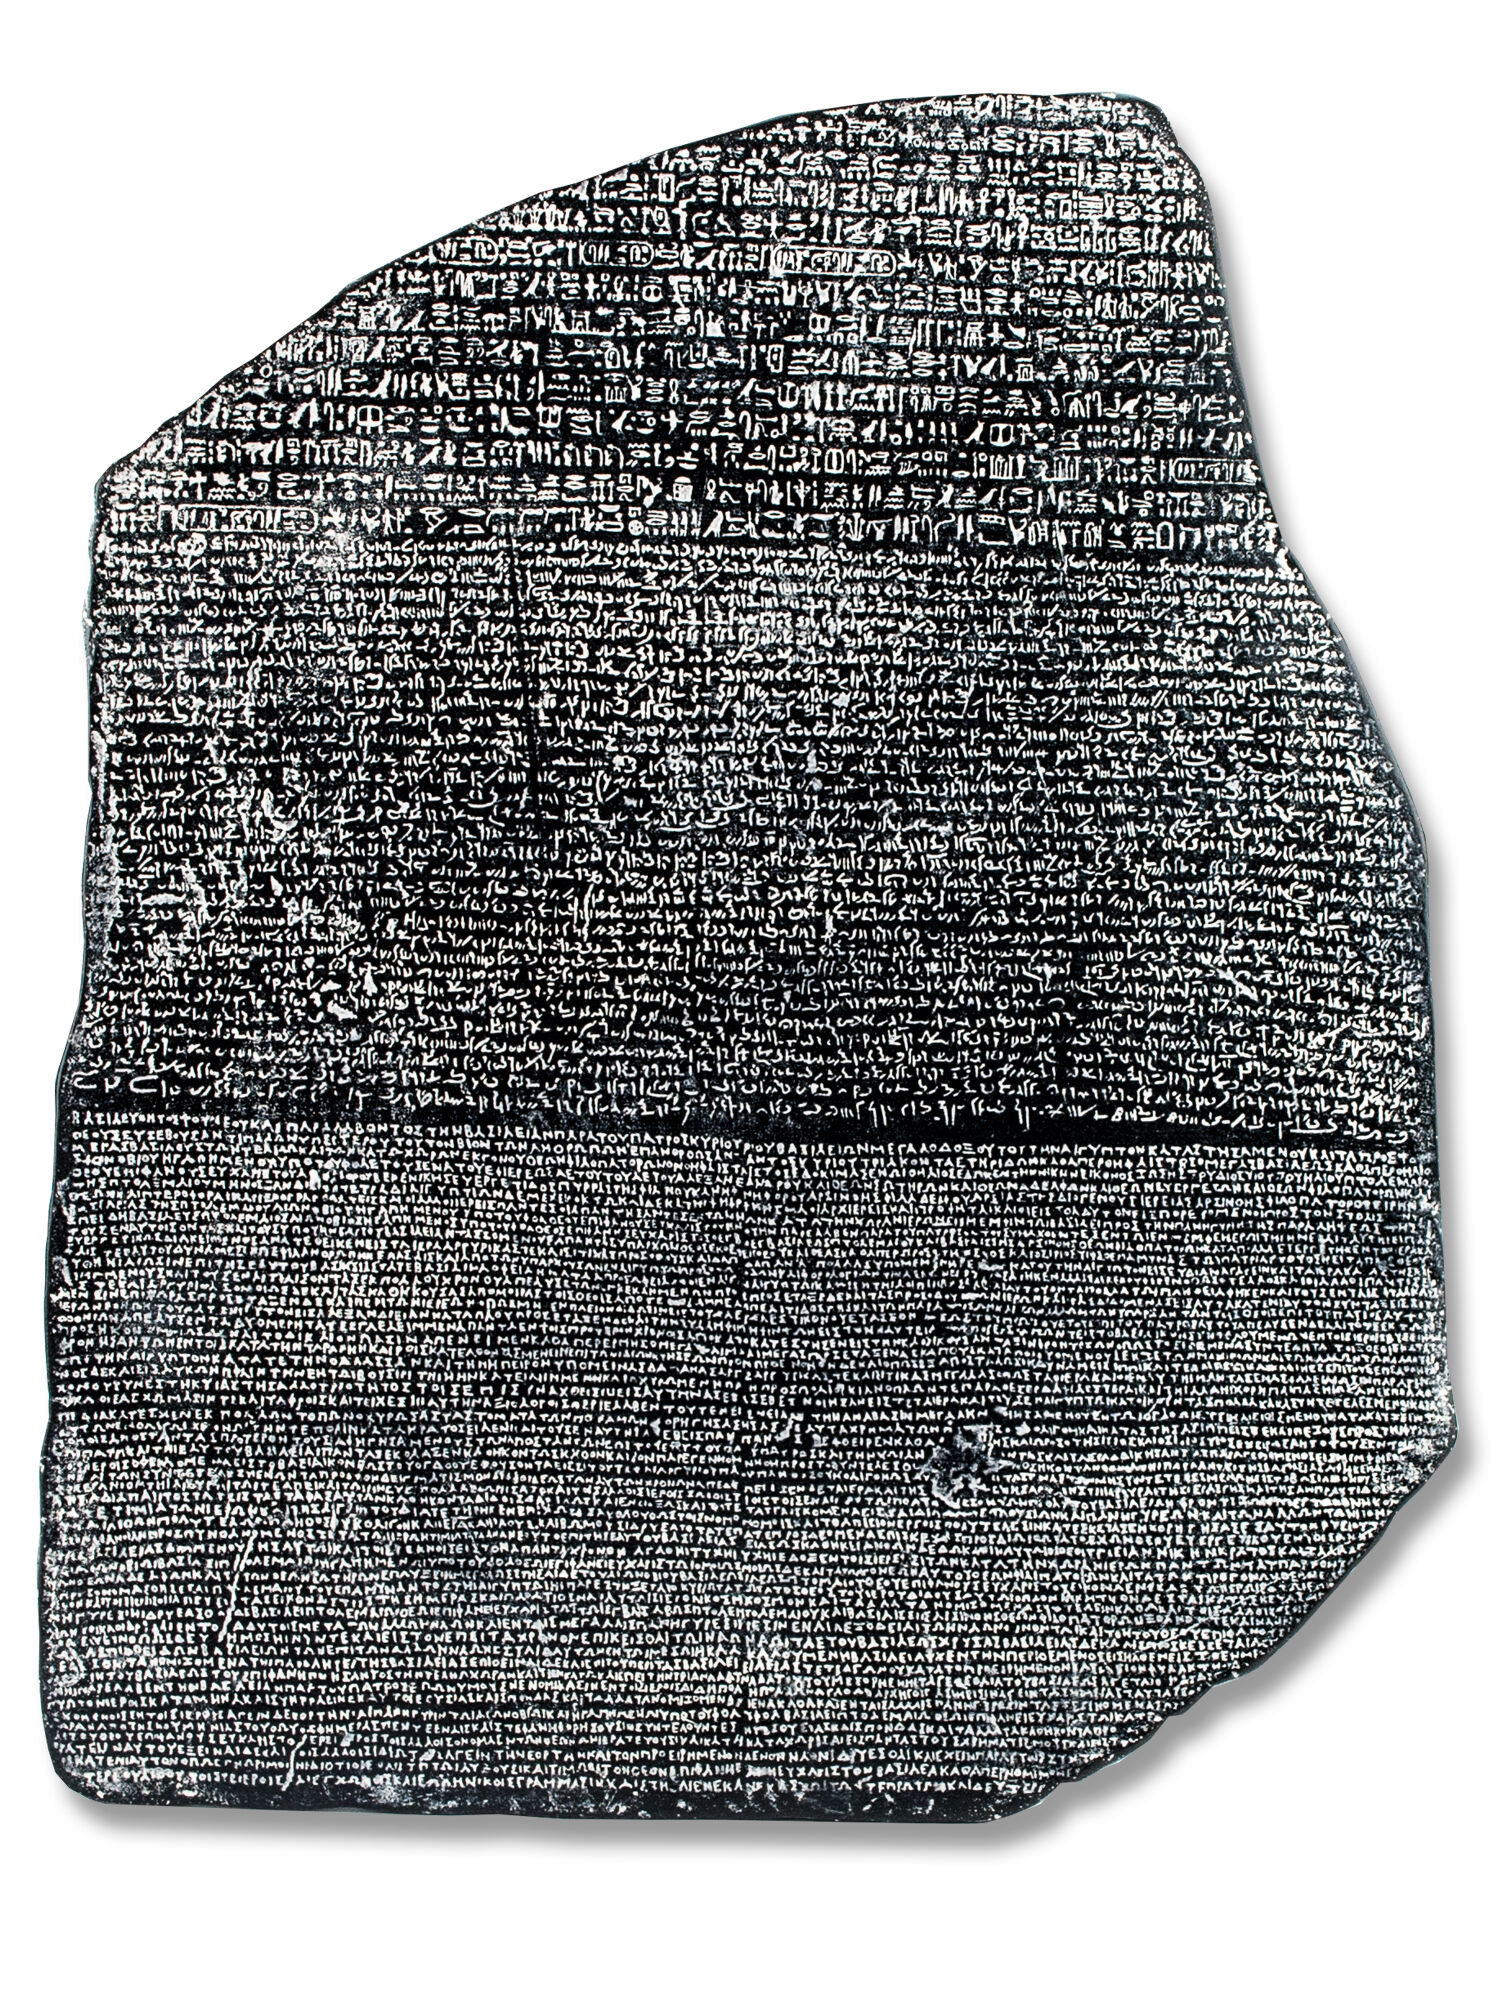 Der Rosetta Stein